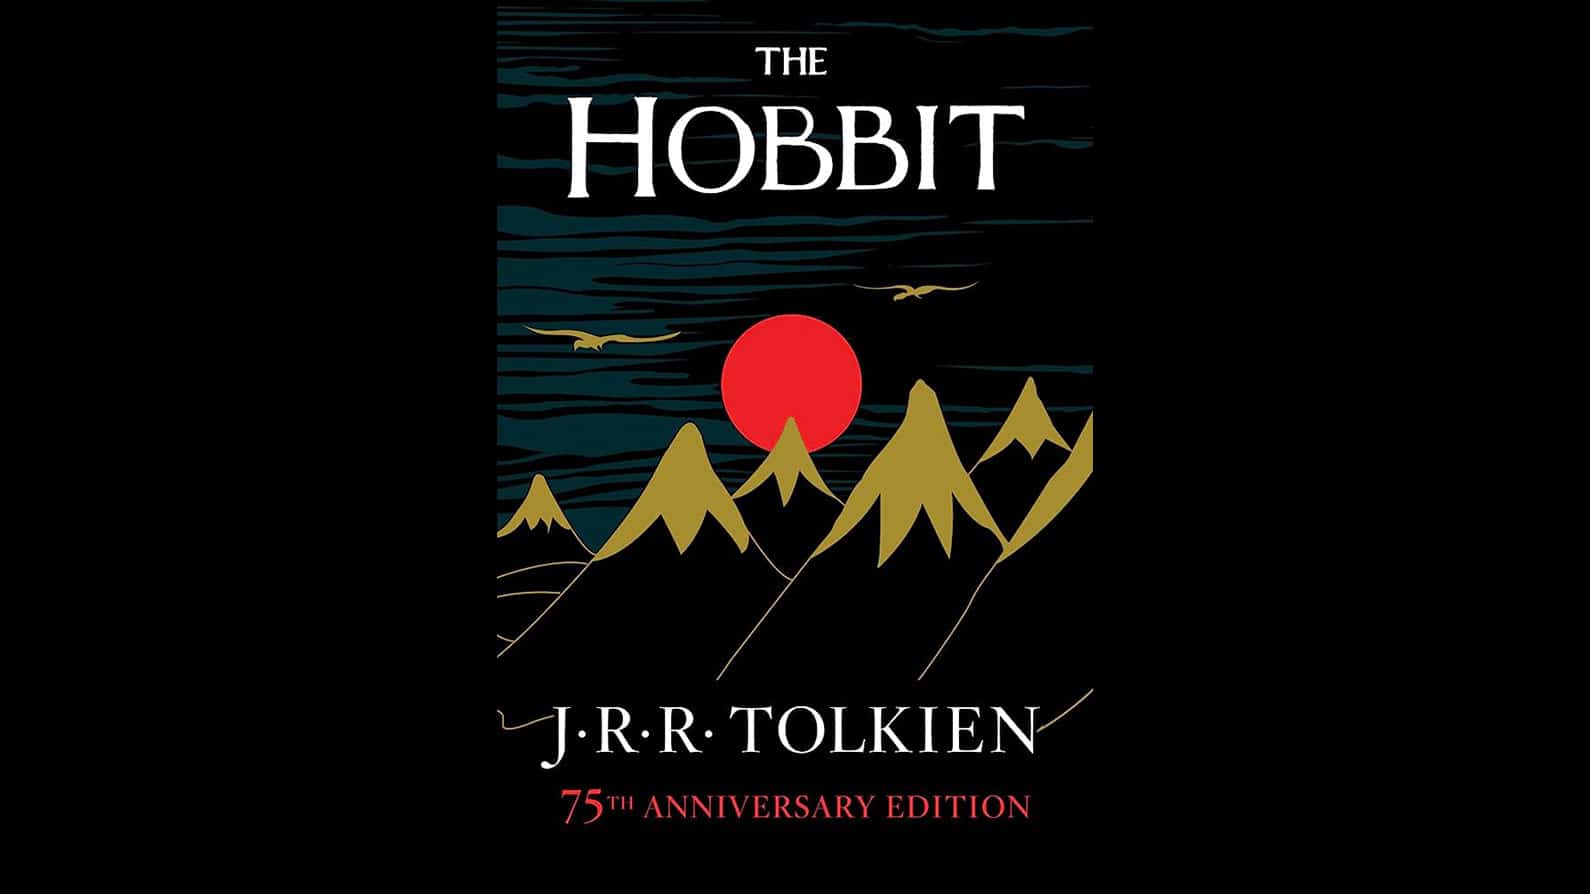 The Hobbit van J.R.R. Tolkien boek cover recensie bergen